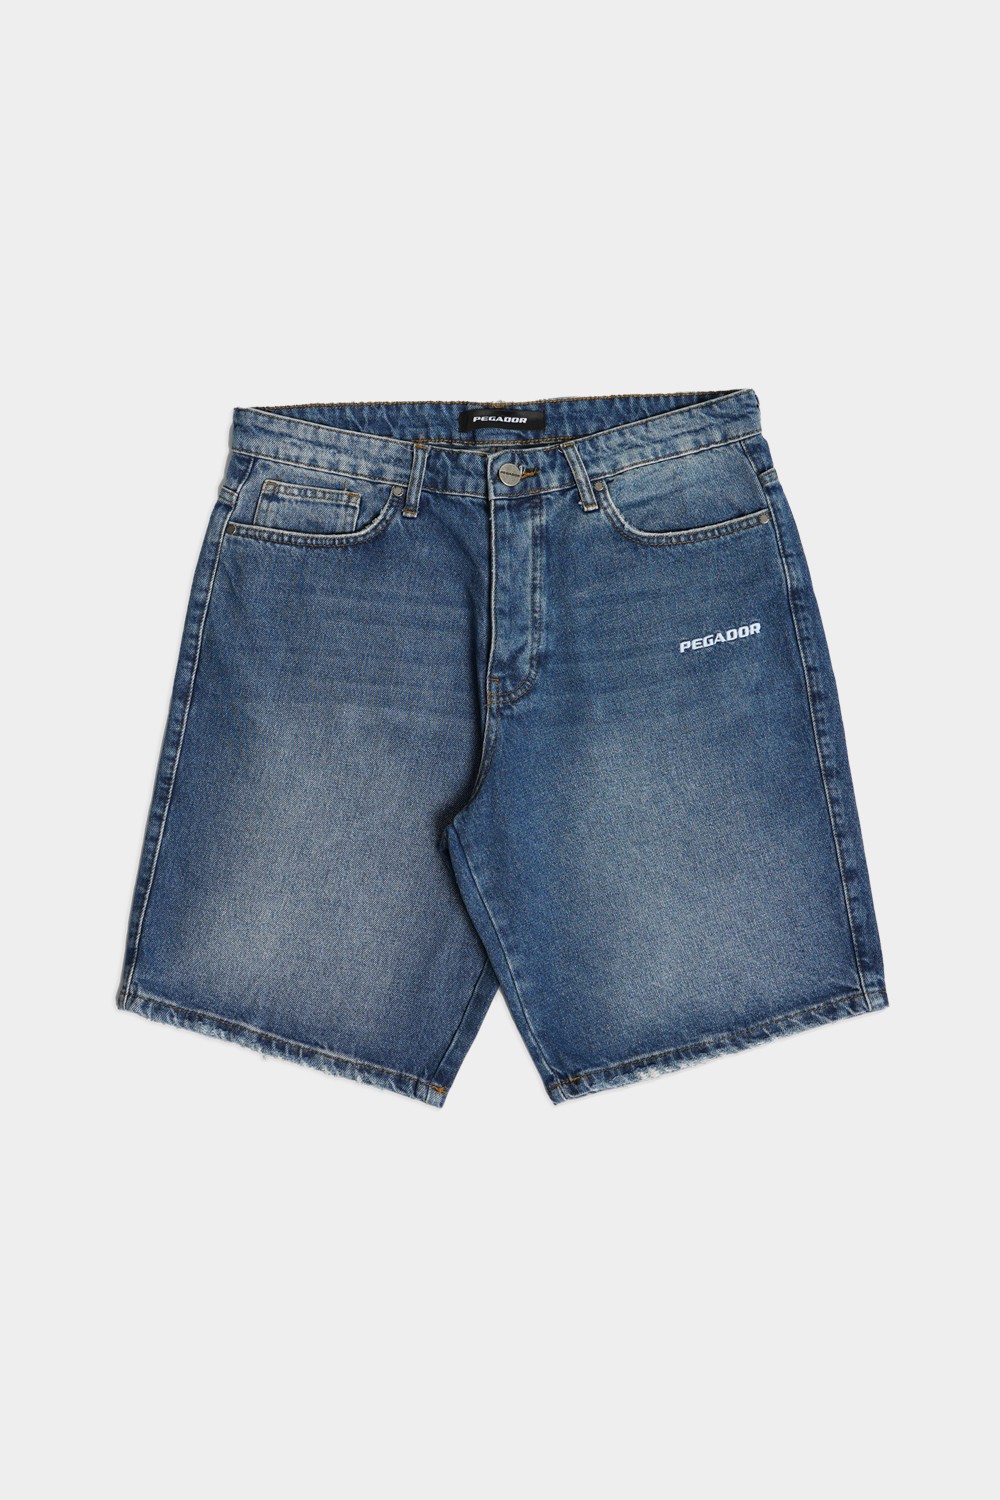 Washed Blue Jeans Shorts (PGDR-6)